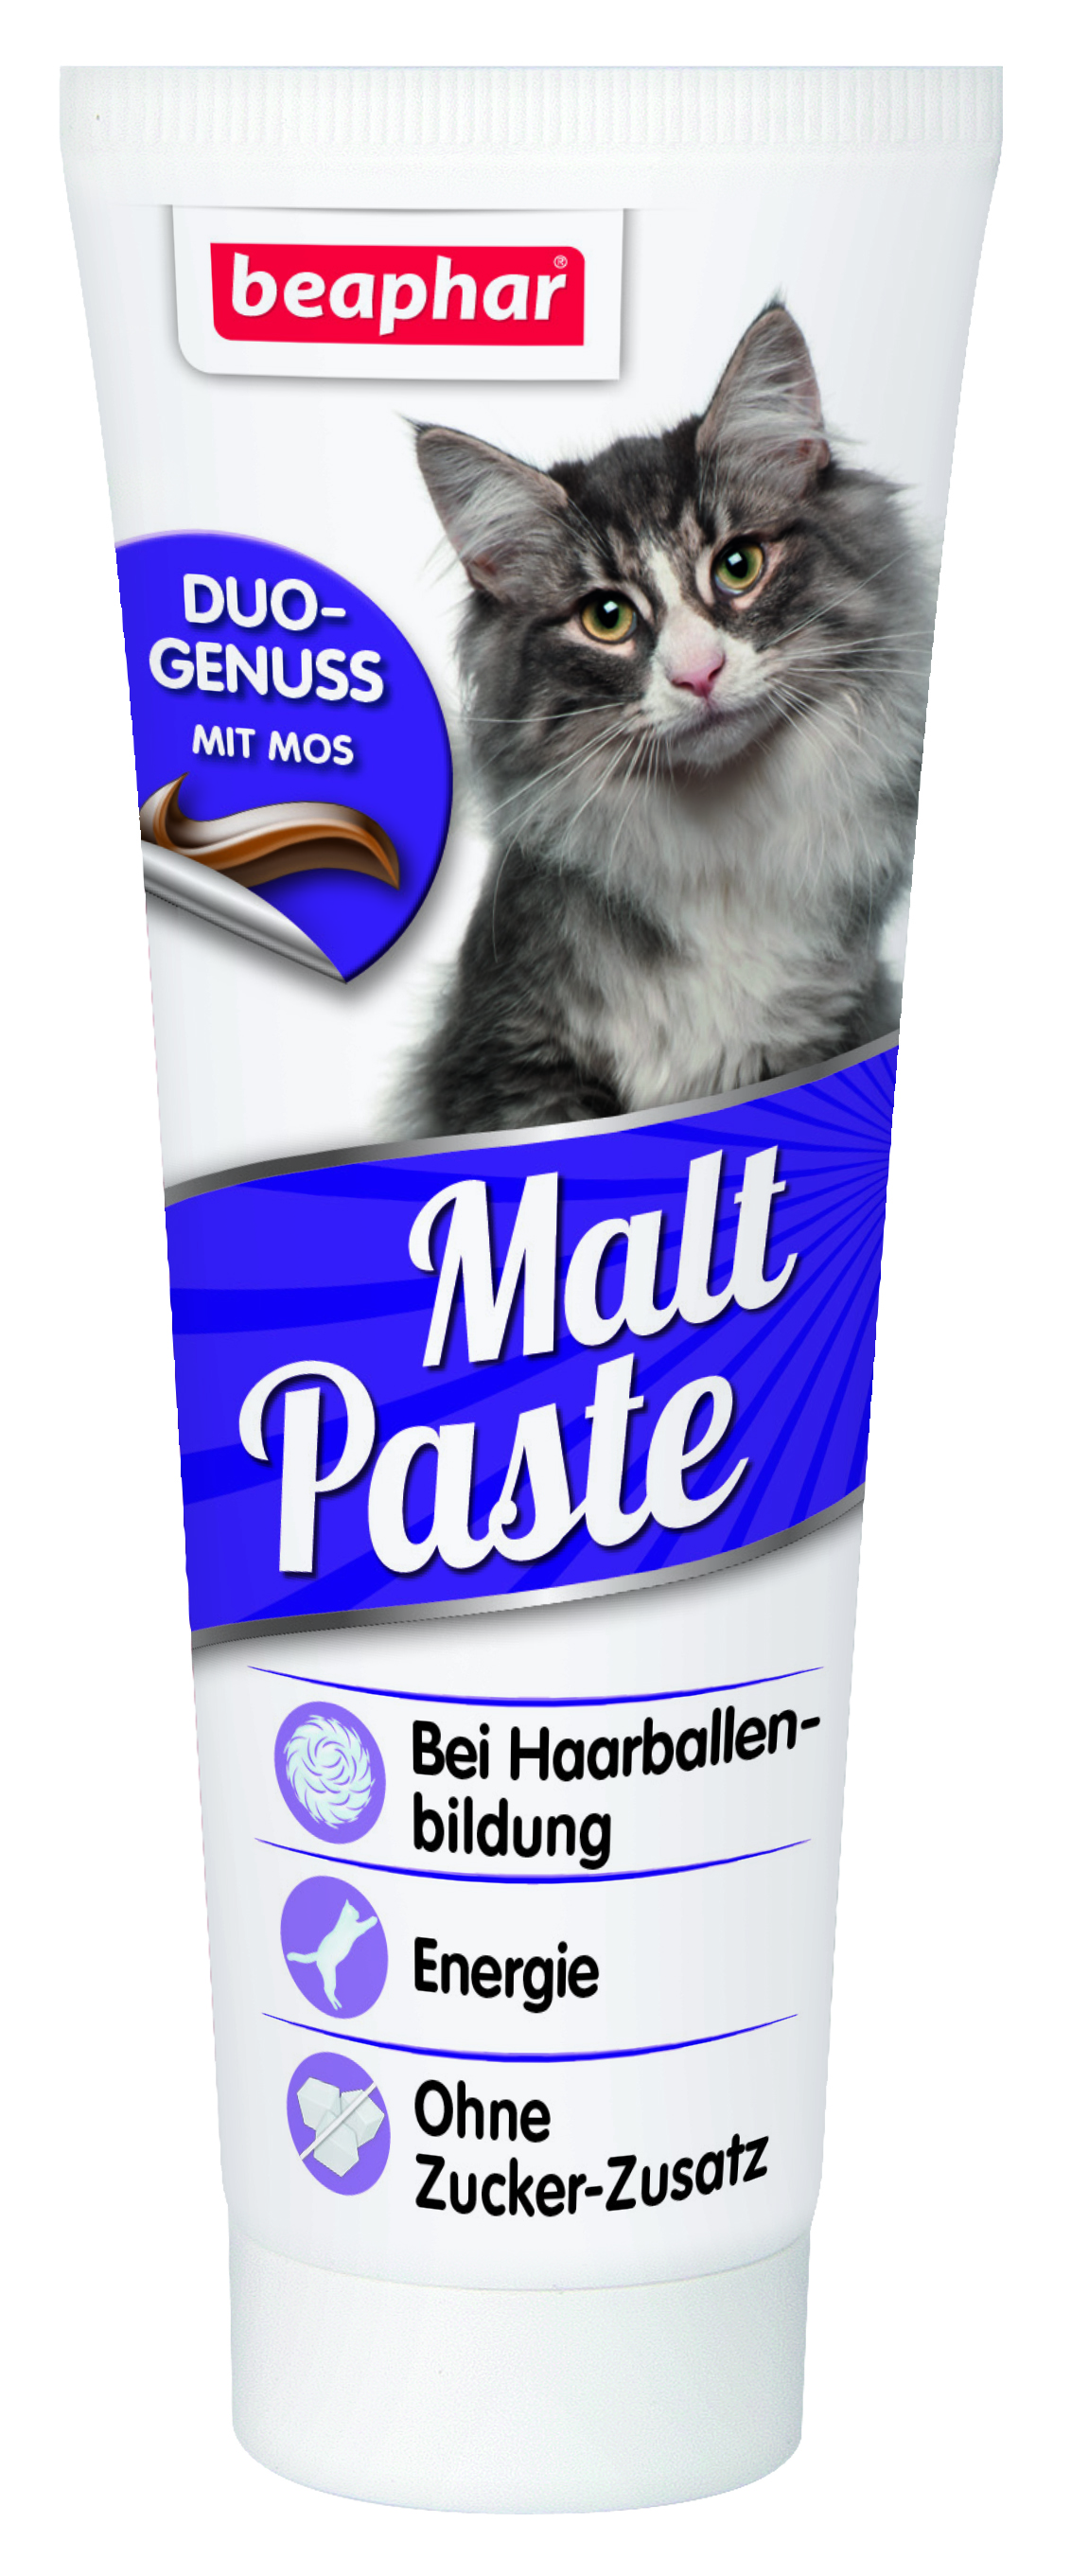 Хорошая паста для кошек. Беафар 12958 Duo Malt pasta паста для вывода шерсти из желудка 100г. Беафар Malt paste 100 г для вывода шерсти. Мальт-паста для кошек Beaphar Malt. Паста для вывода шерсти из желудка Beaphar "Malt paste", для кошек, 100 г.